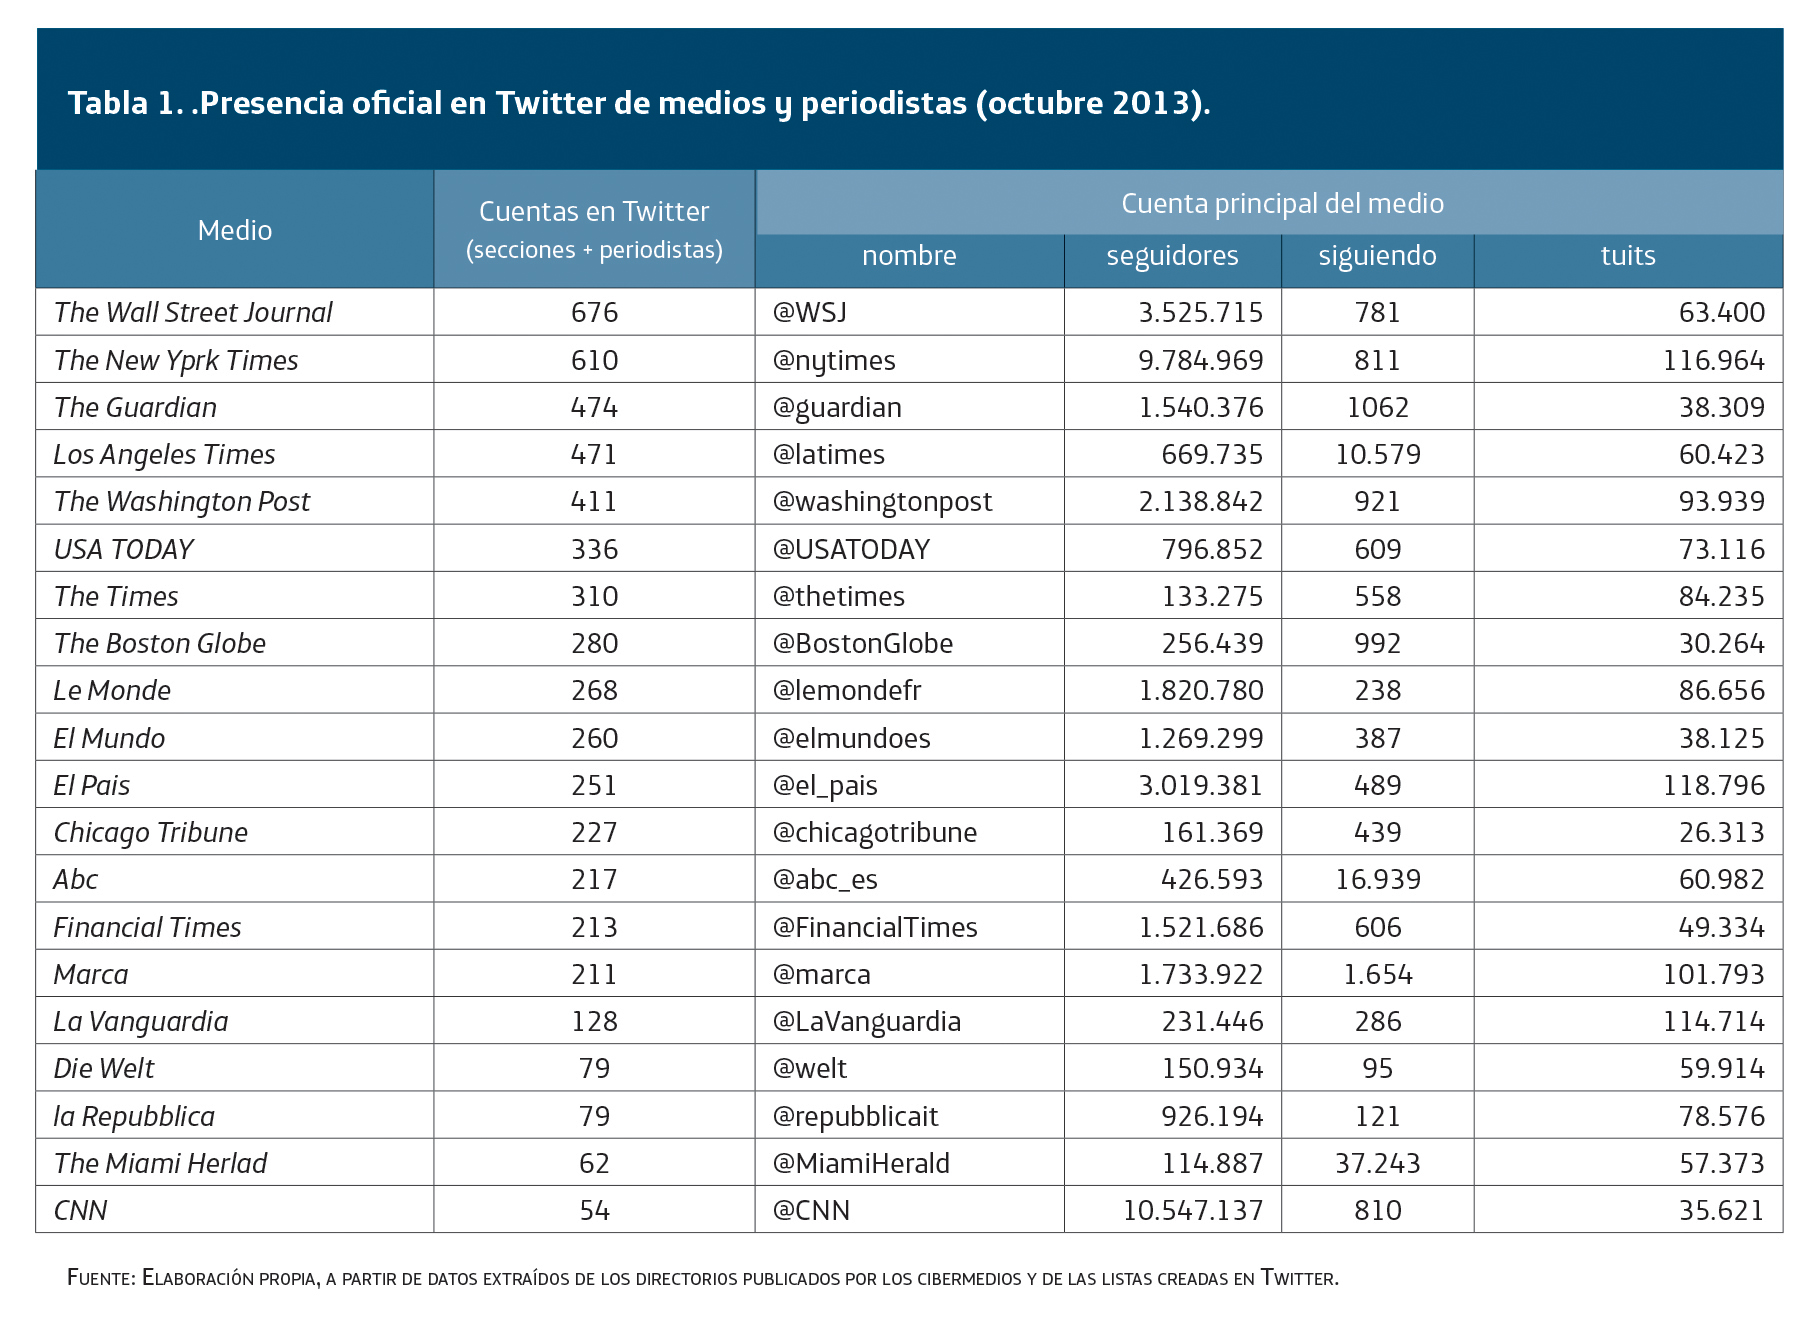 Presencia oficial en Twitter de medios y periodistas (octubre 2013)